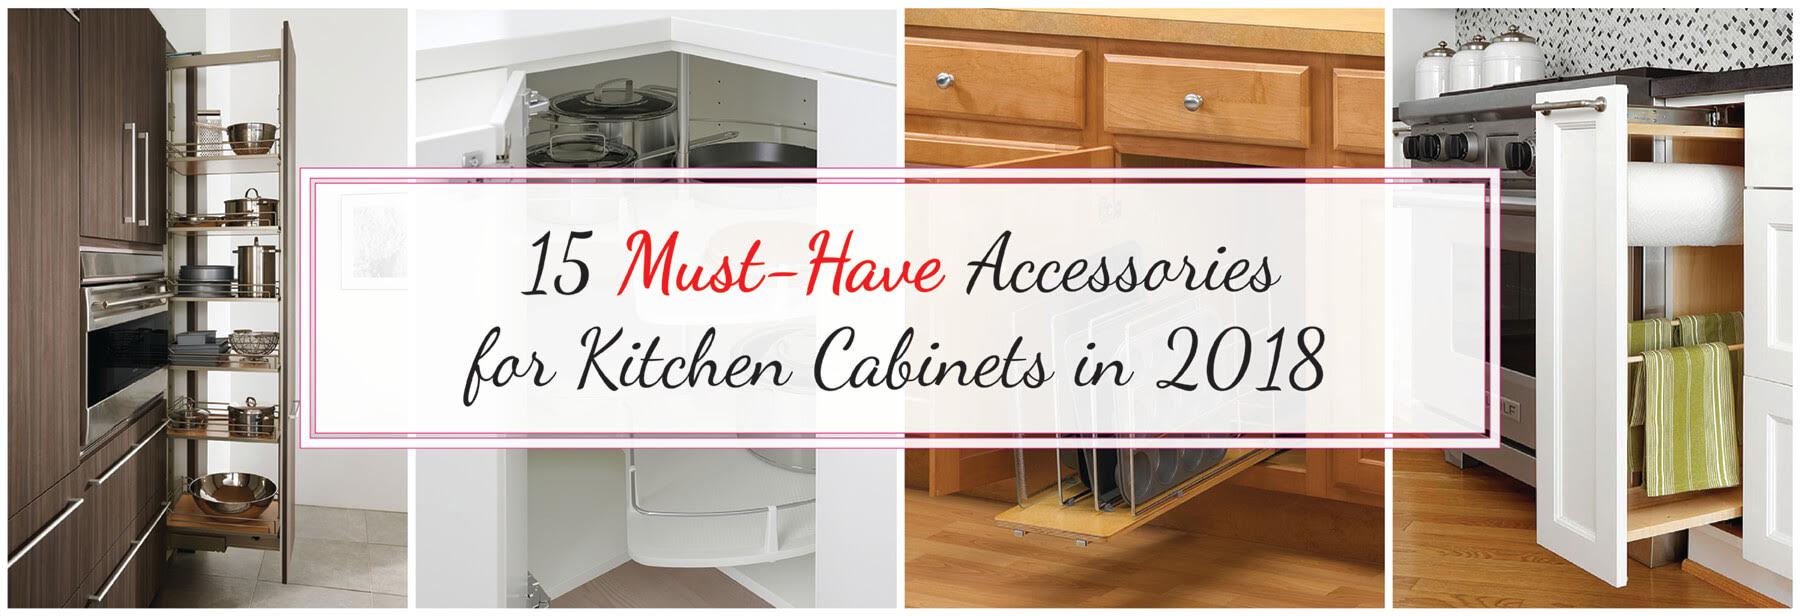 Cabinet Accessories Help Make the Kitchen